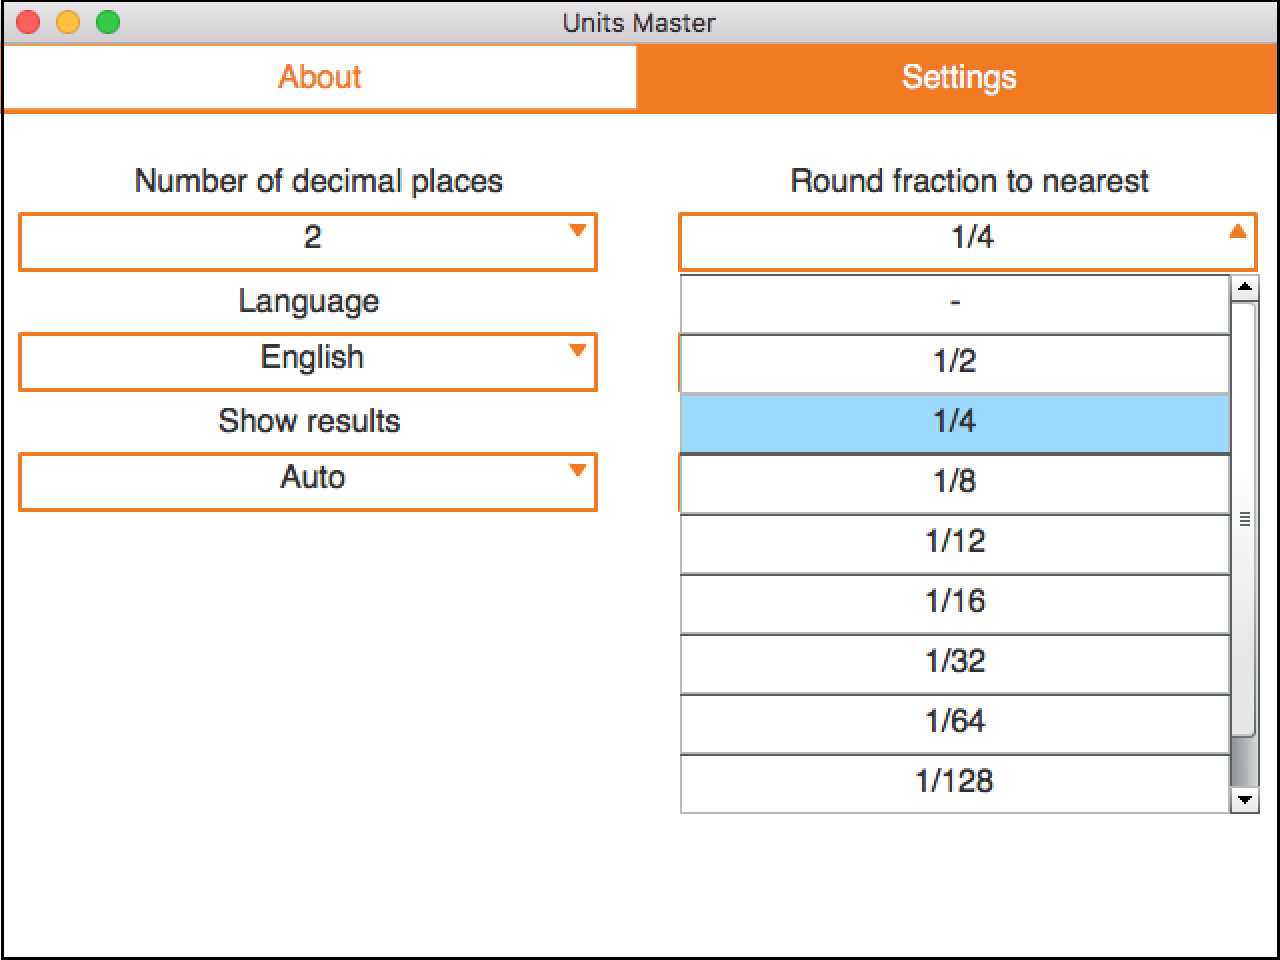 Rounding settings for fractions